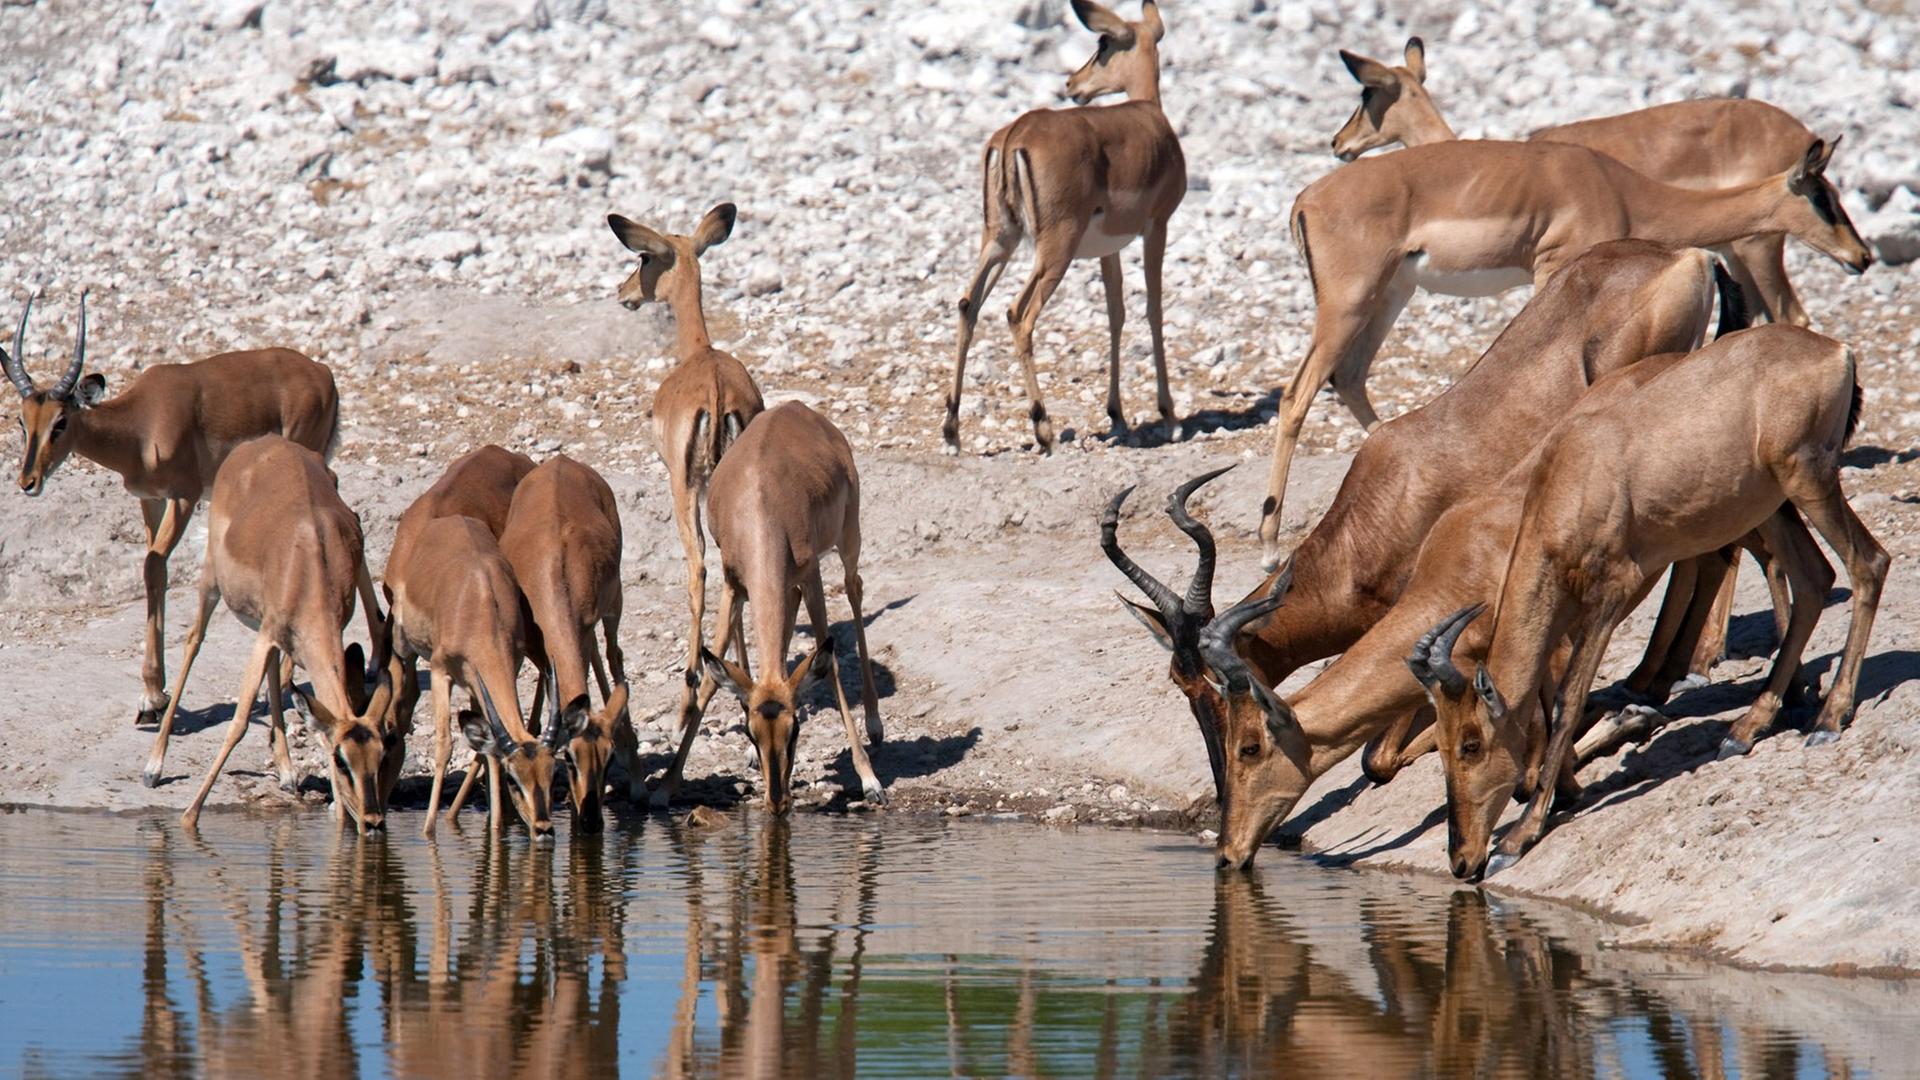 Kuhantilopen im Etosha-Nationalpark in Namibia. 